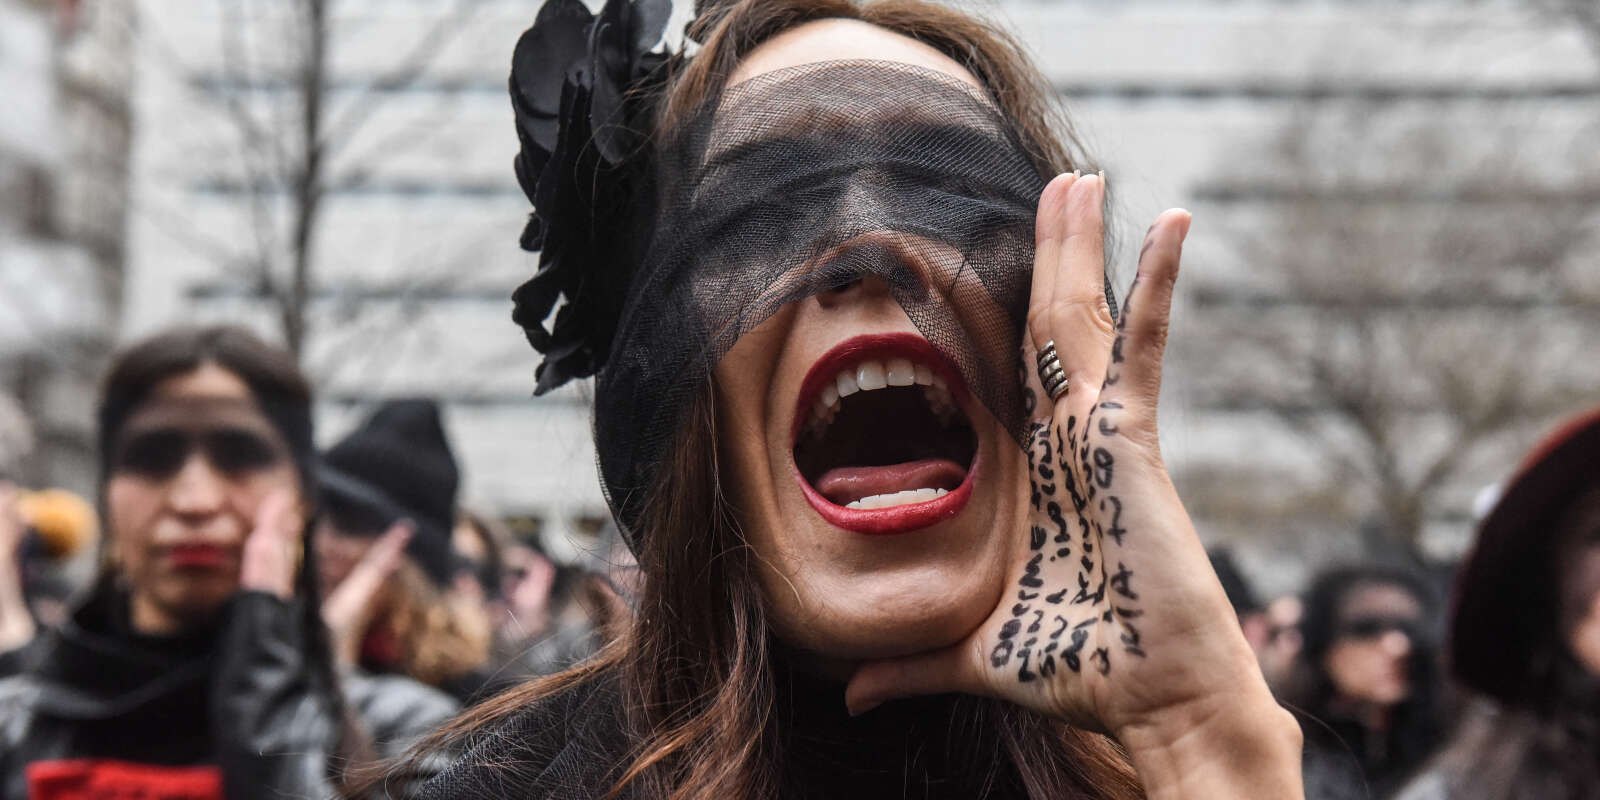 Des femmes protestent devant le tribunal pénal de New York pendant le procès pour crimes sexuels de Harvey Weinstein. Le 10 janvier 2020.